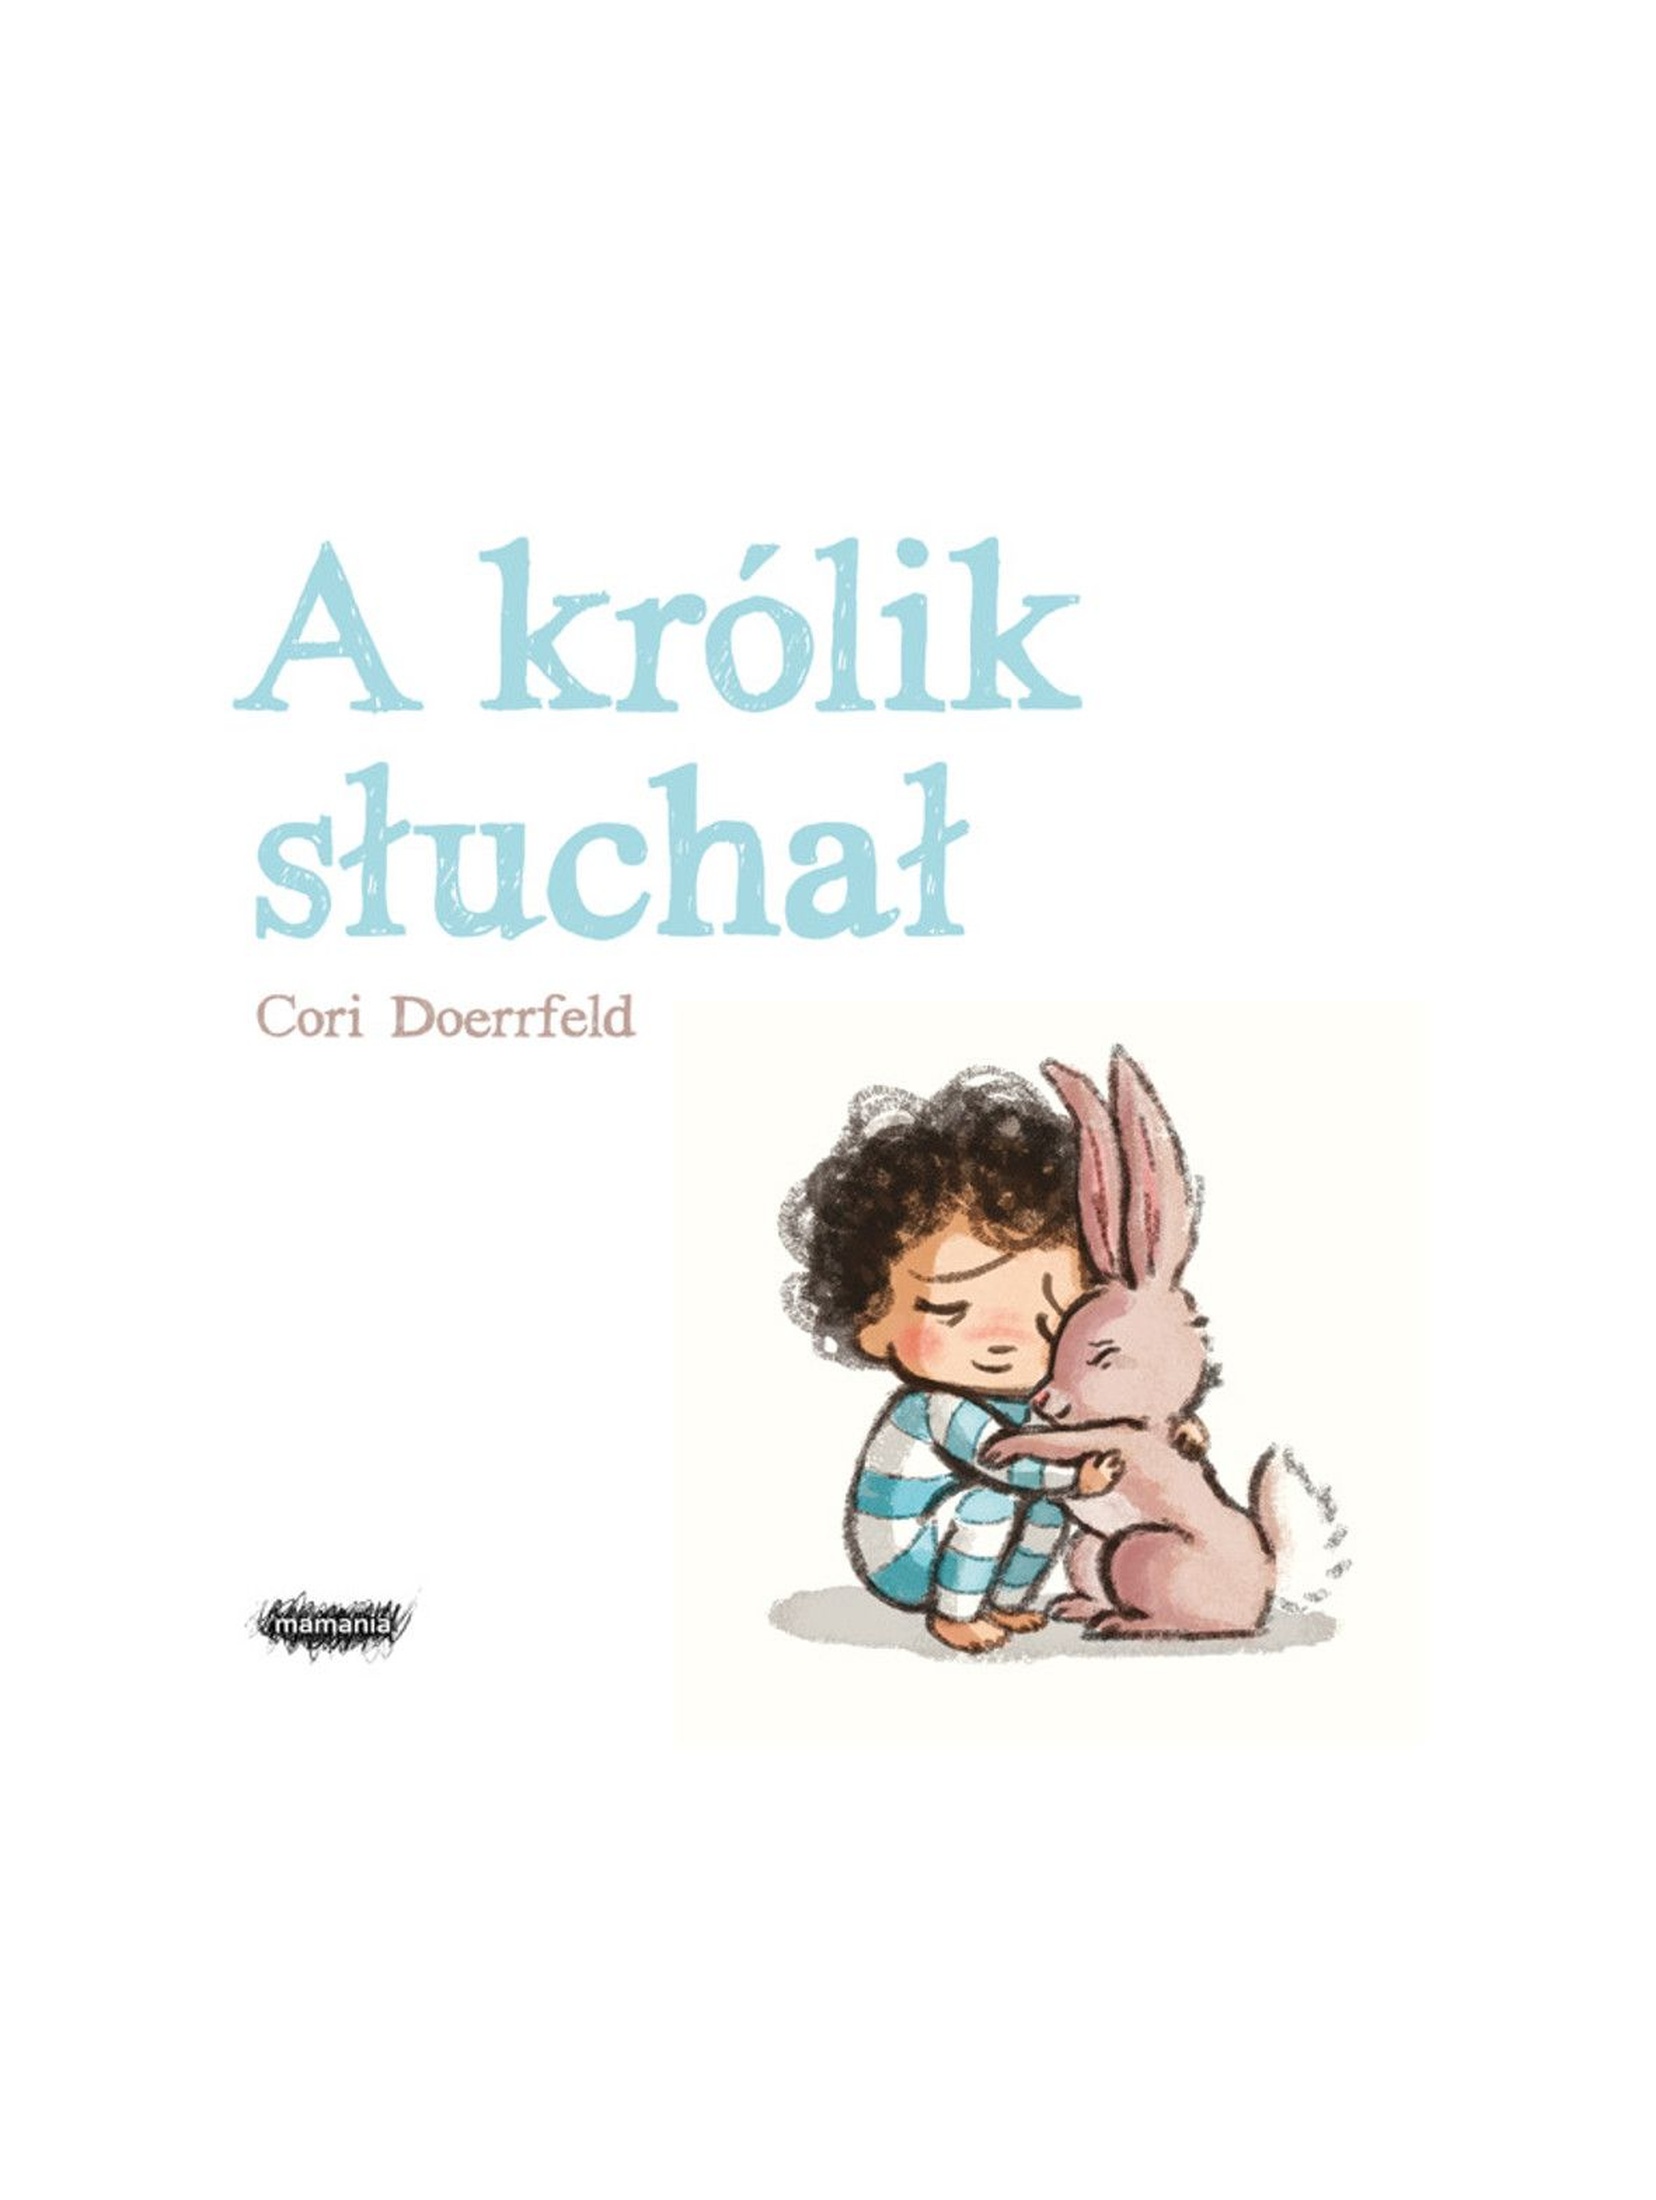 Książka dla dzieci "A królik słuchał"- C. Doerrfeld